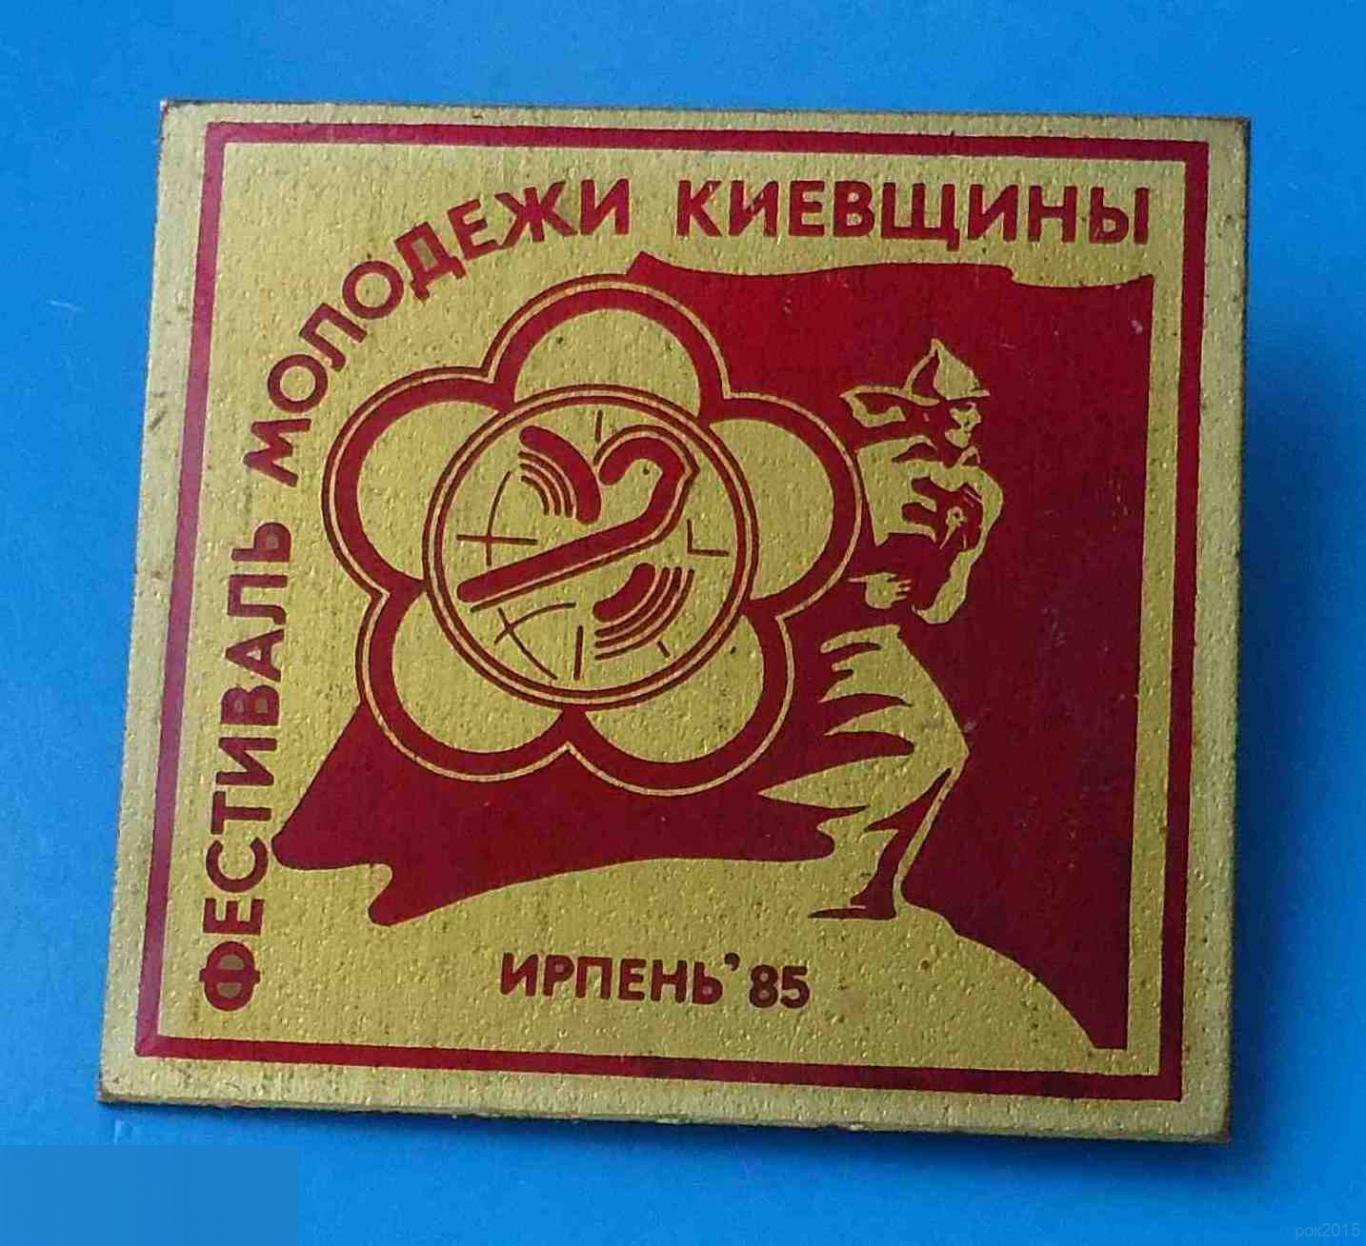 Фестиваль молодежи Киевщины Ирпень 1985 ВЛКСМ